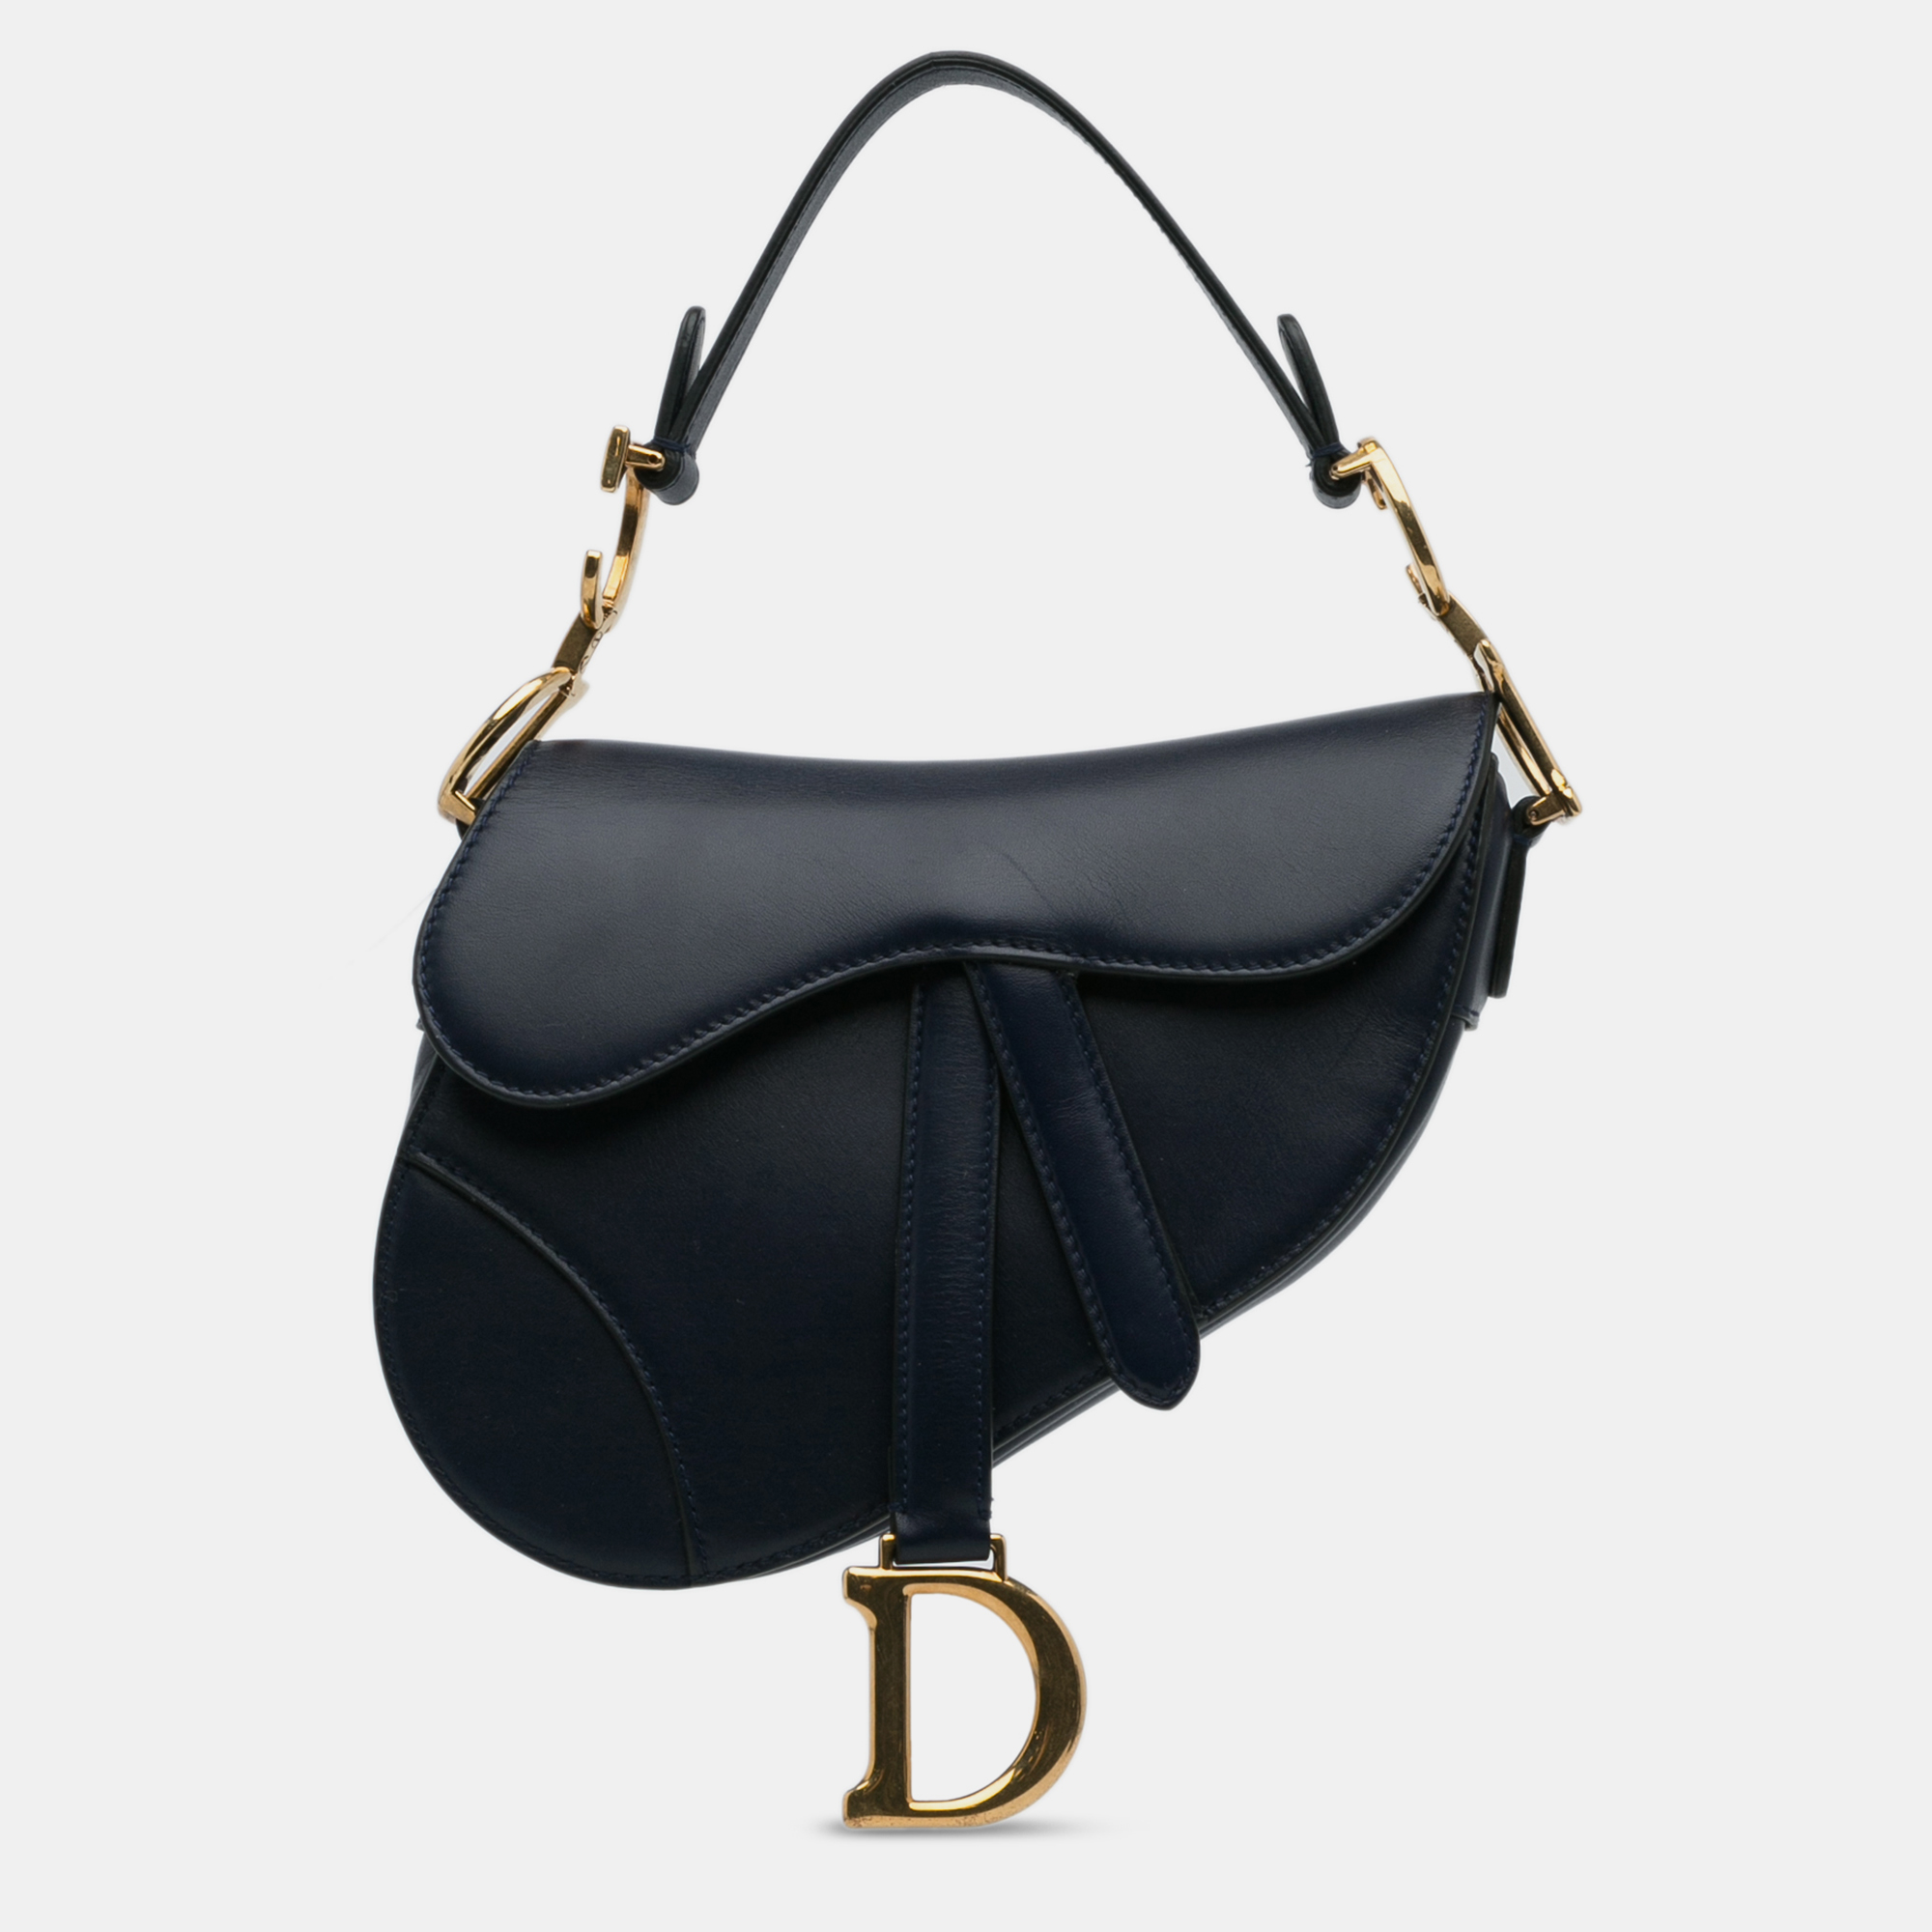 Dior mini leather saddle bag